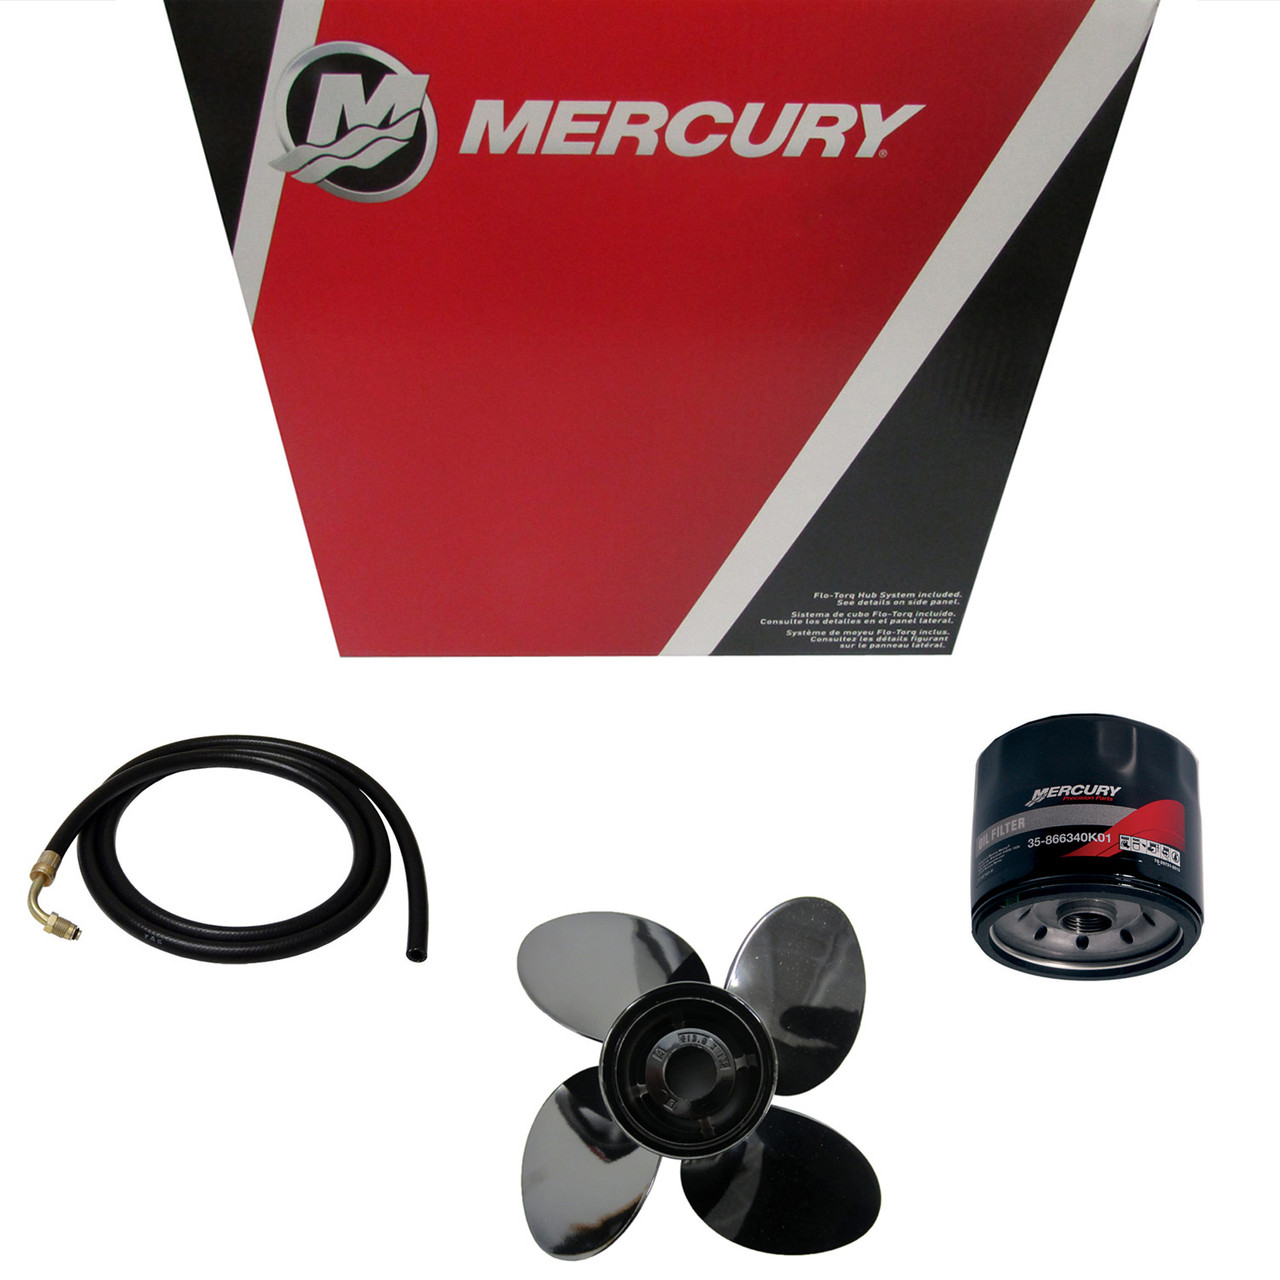 Mercury Marine / Mercruiser New OEM Paint-Black 6, 92-802878Q32